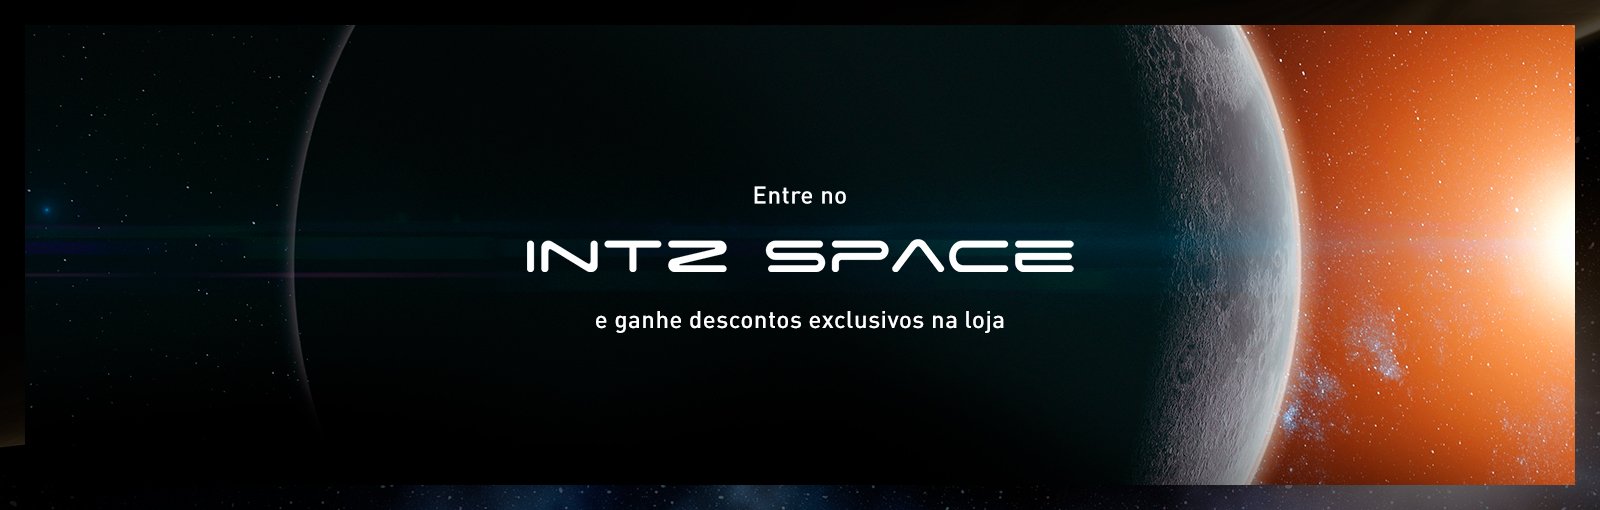 banner-desktop-intz-space